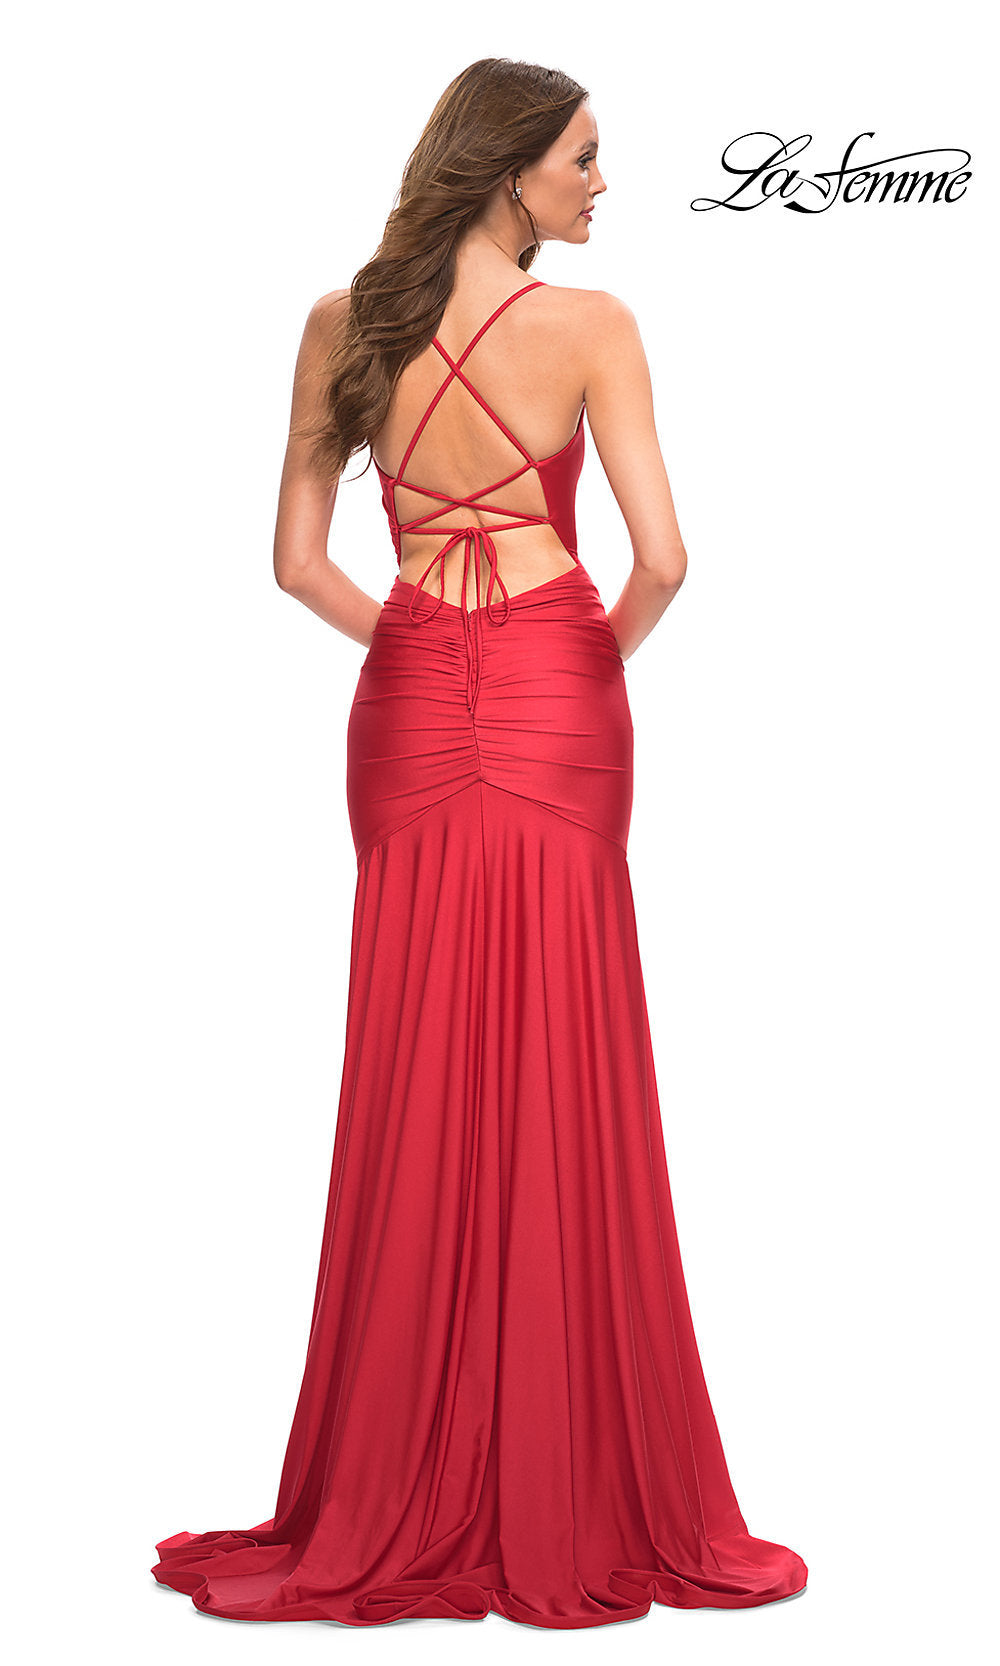 La Femme Strappy-Back Long Designer Prom Dress